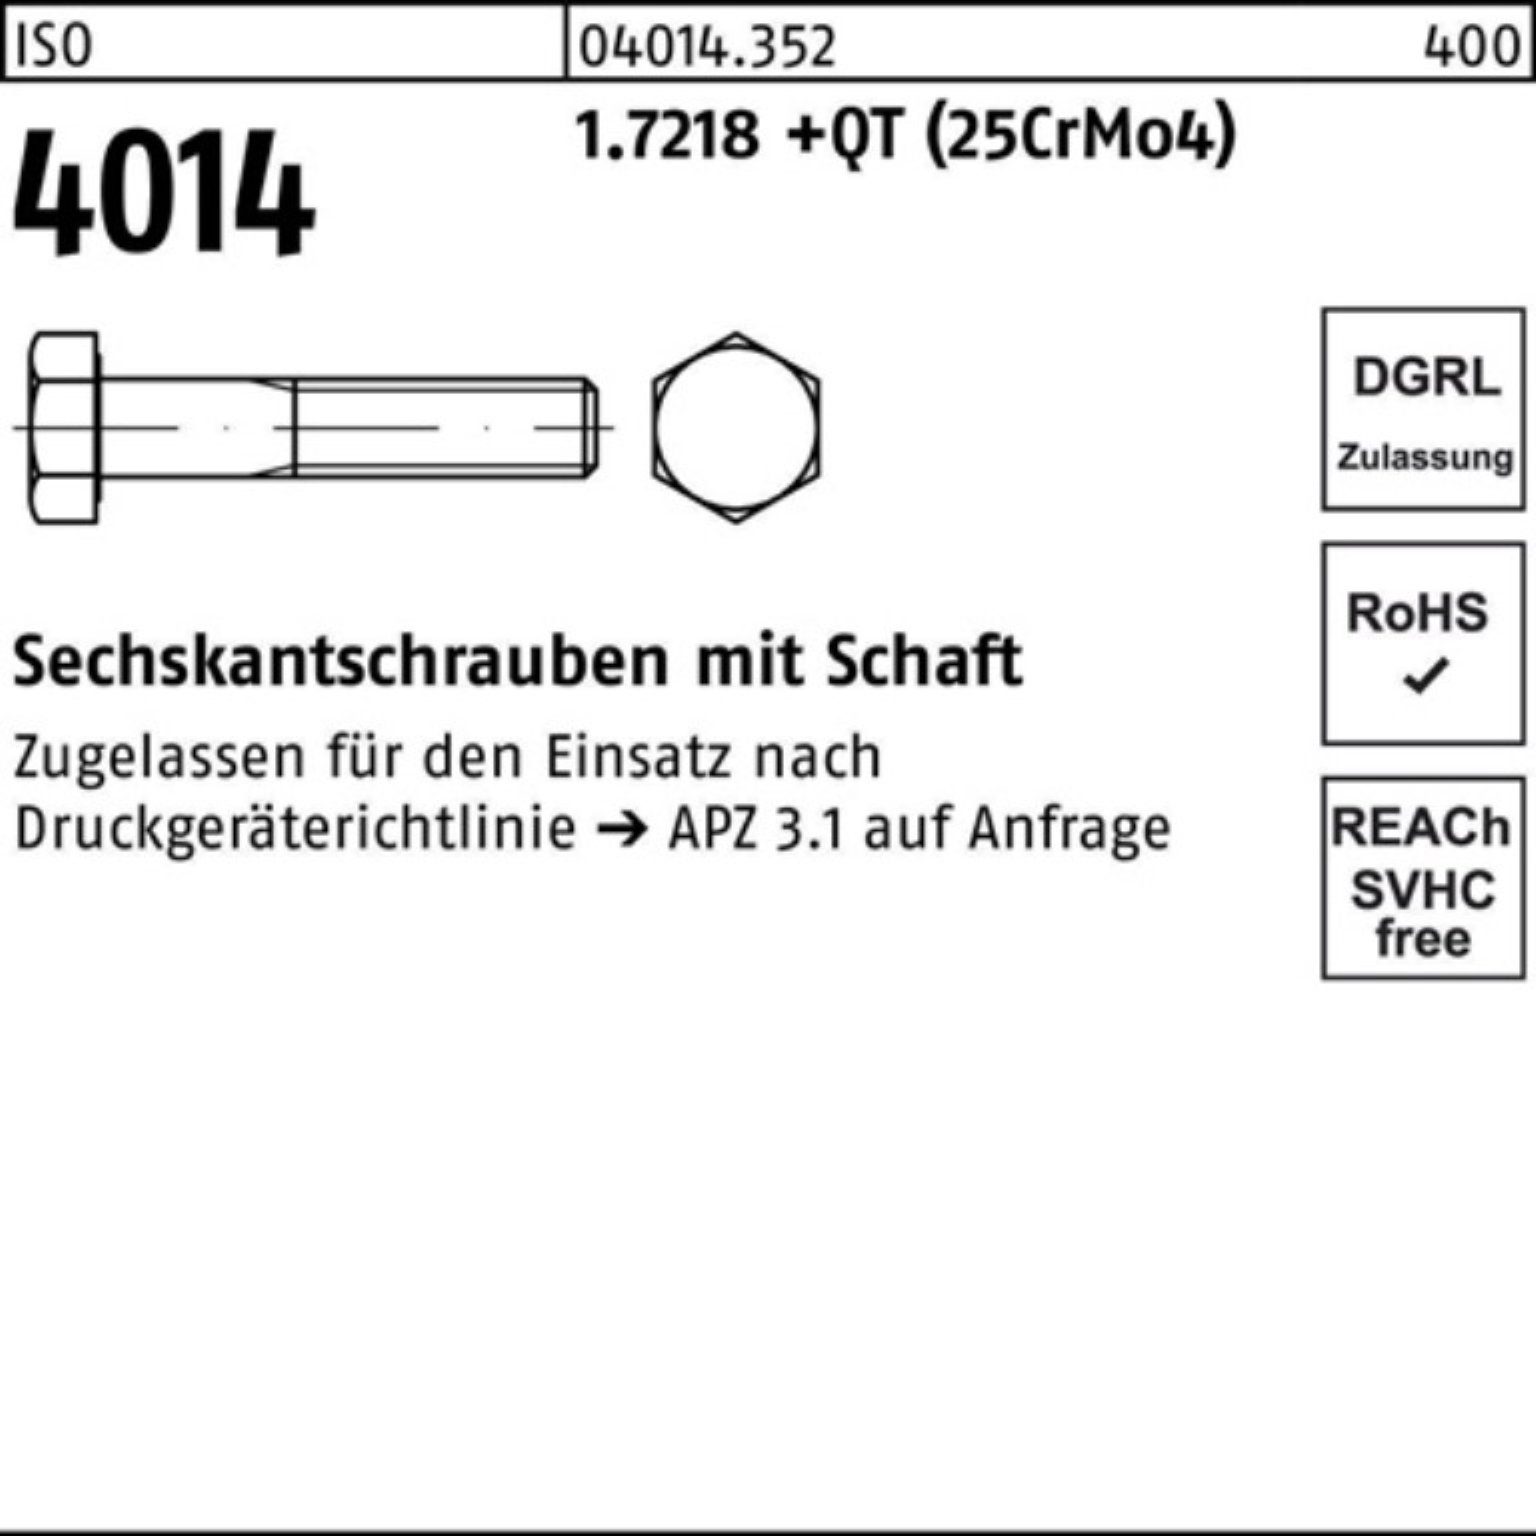 Sechskantschraube 100er ISO Bufab 170 Sechskantschraube 4014 Pack (25Cr 1.7218 Schaft +QT M30x